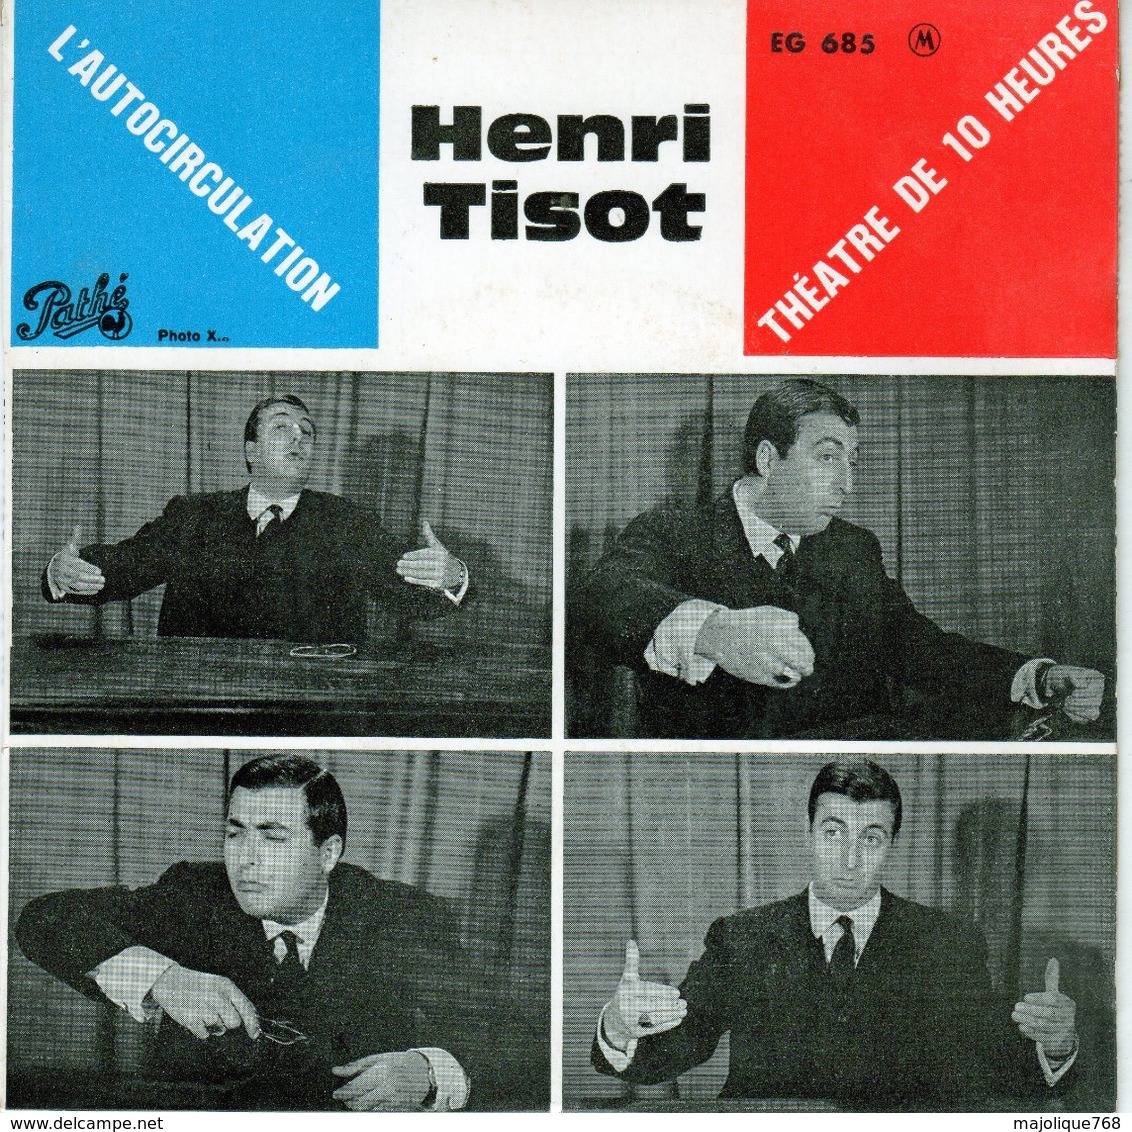 Henri Tisot - L'Autocirculation - Pathé EG 685 - 1962 - Comiques, Cabaret